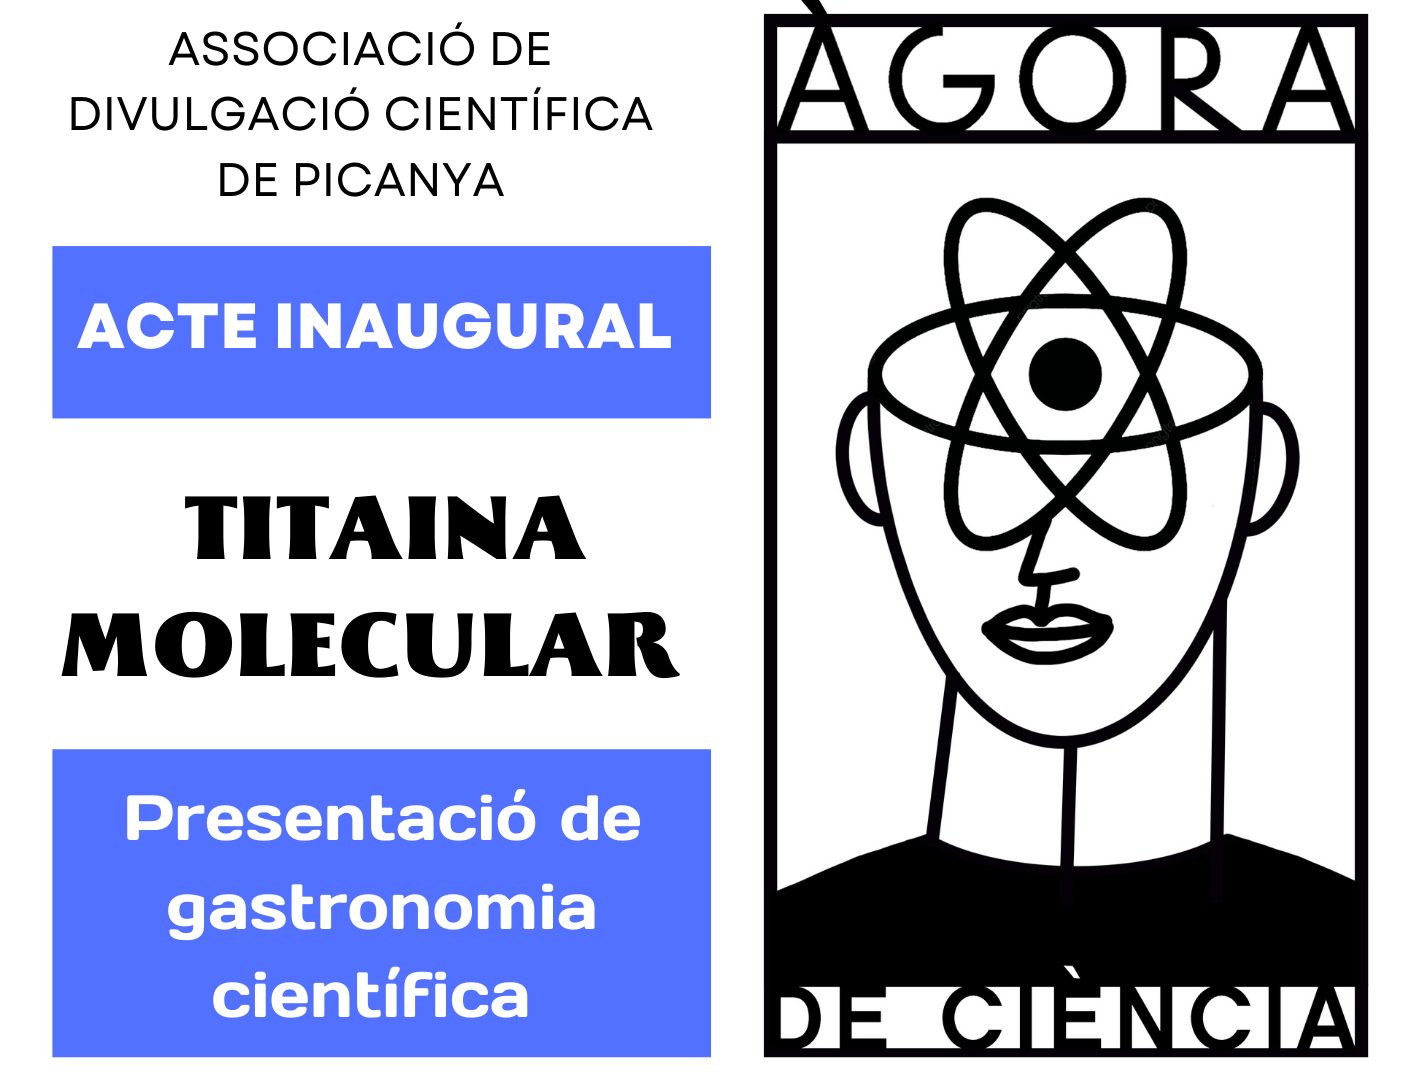 Inauguración de la nueva asociación de divulgación científica Àgora de Ciència en Picanya